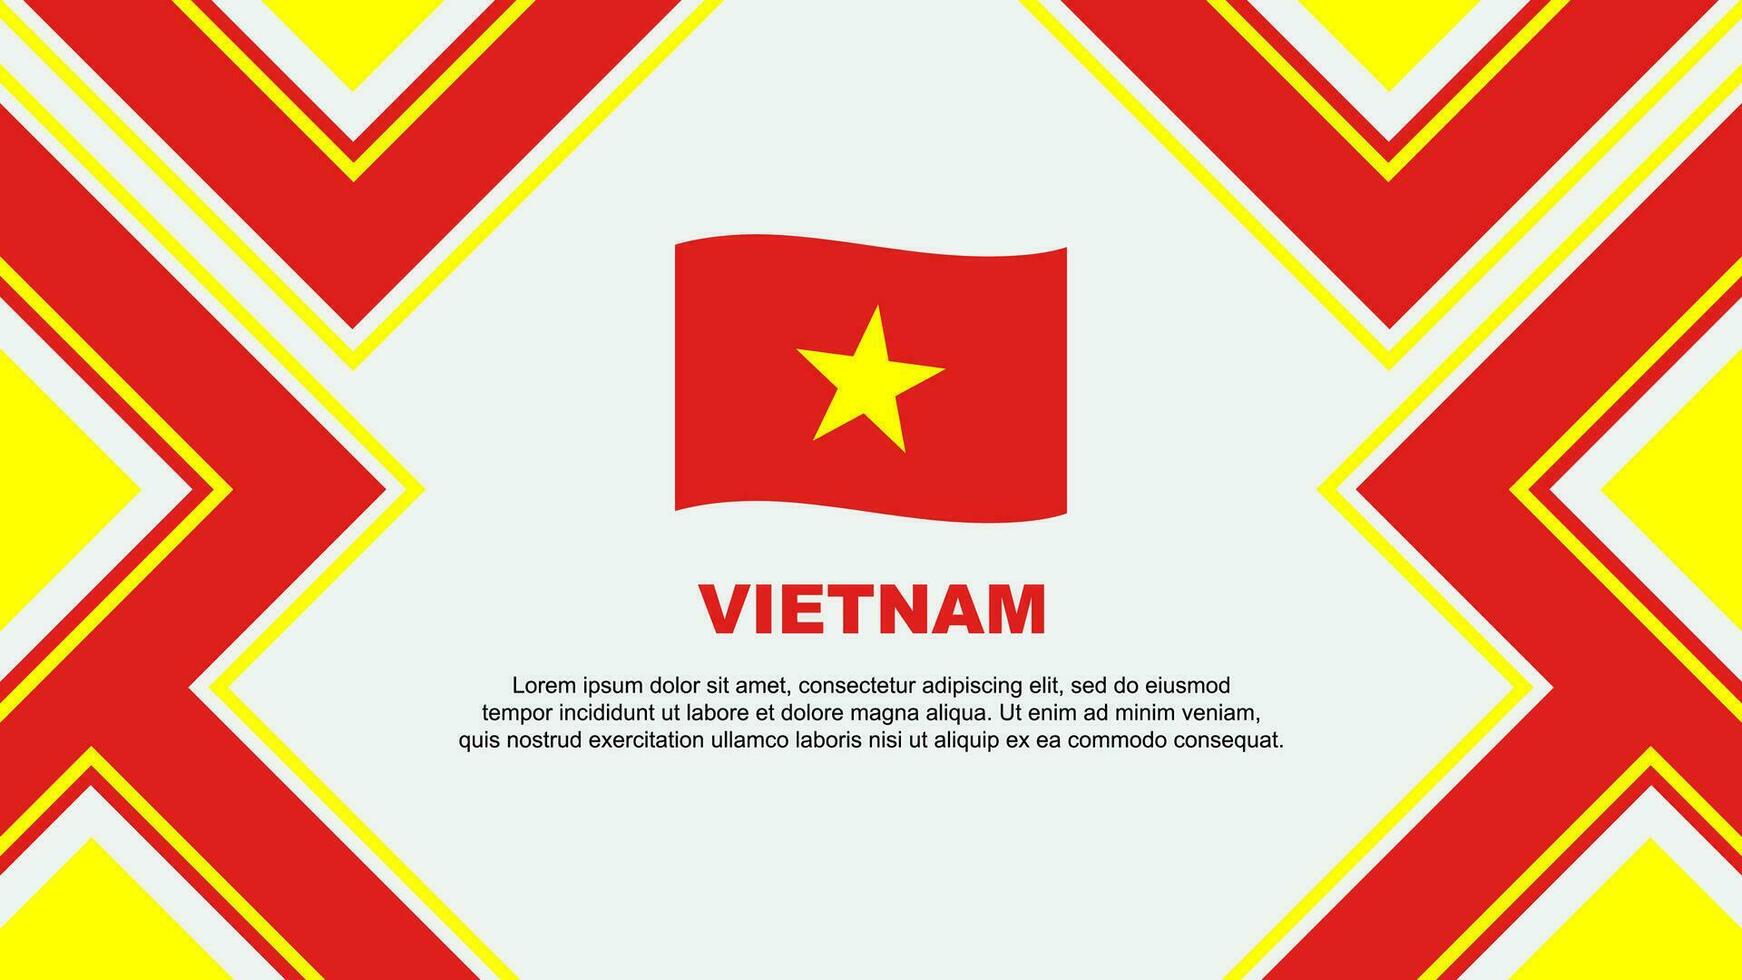 Vietnam vlag abstract achtergrond ontwerp sjabloon. Vietnam onafhankelijkheid dag banier behang vector illustratie. Vietnam vector